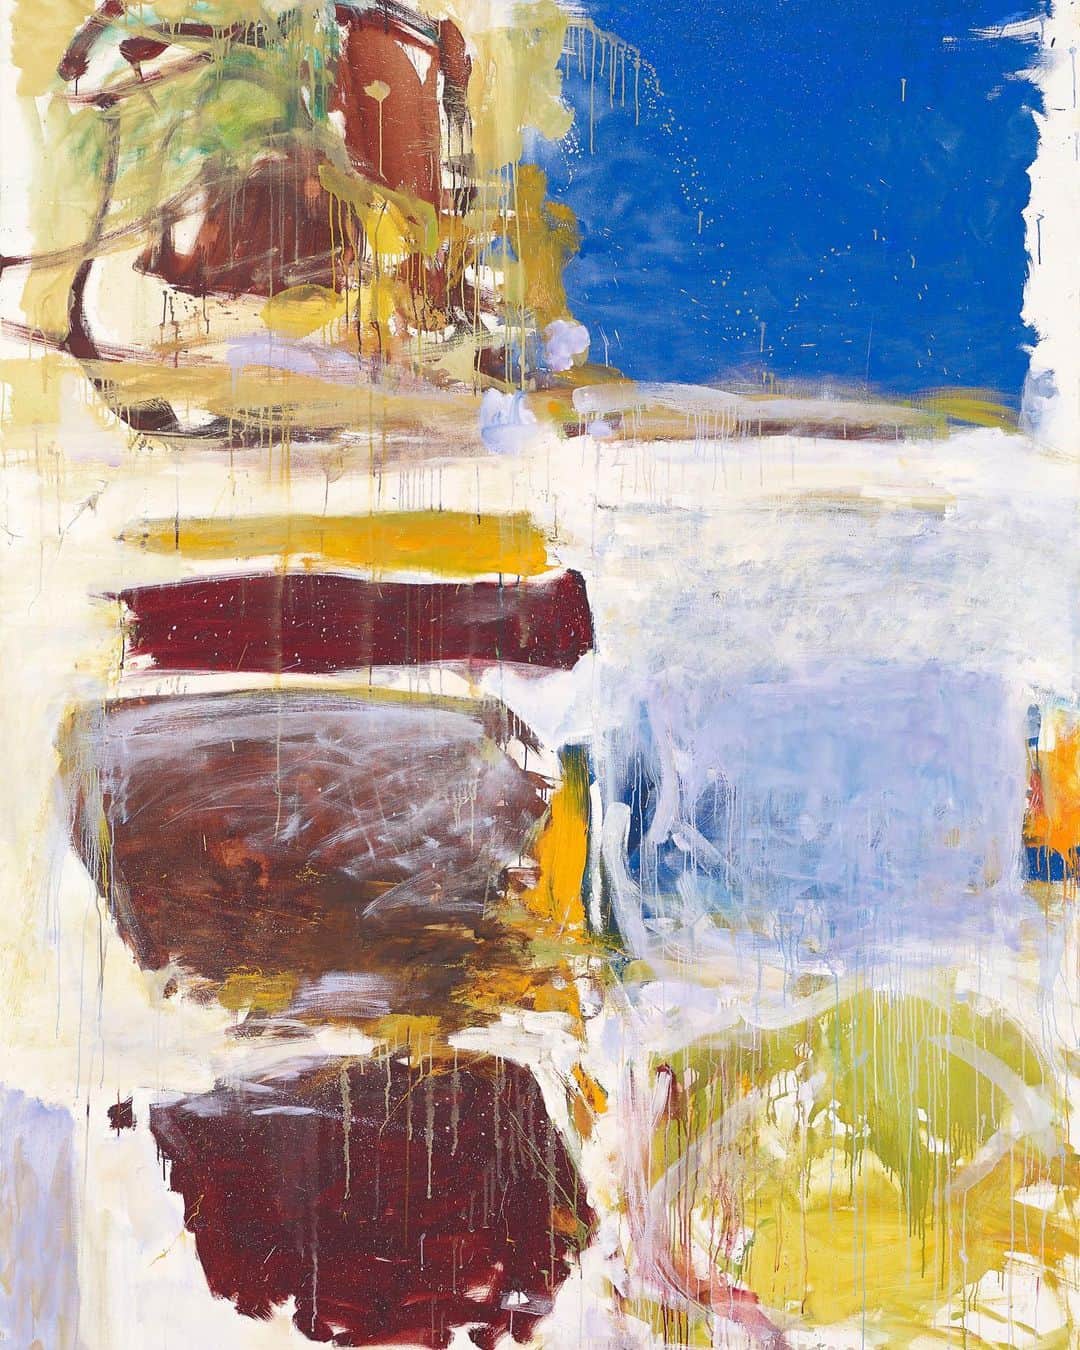 サザビーズさんのインスタグラム写真 - (サザビーズInstagram)「It is almost 100 years since Joan Mitchell, one of the great American abstract painters, was born. In a new Sotheby's interview series, we spoke to two experts on Mitchell’s enduring legacy and growing appeal for collectors—  𝘐𝘴 𝘵𝘩𝘦𝘳𝘦 𝘰𝘯𝘦 𝘵𝘩𝘪𝘯𝘨 𝘺𝘰𝘶 𝘴𝘩𝘰𝘶𝘭𝘥 𝘭𝘰𝘰𝘬 𝘰𝘶𝘵 𝘧𝘰𝘳 𝘸𝘩𝘦𝘯 𝘭𝘰𝘰𝘬𝘪𝘯𝘨 𝘢𝘵 𝘢 𝘑𝘰𝘢𝘯 𝘔𝘪𝘵𝘤𝘩𝘦𝘭𝘭 𝘱𝘢𝘪𝘯𝘵𝘪𝘯𝘨?  𝘚𝘰𝘵𝘩𝘦𝘣𝘺’𝘴 @𝘰𝘵𝘵𝘪𝘭𝘪𝘦𝘤𝘭𝘢𝘪𝘳𝘦: 𝘈 𝘴𝘦𝘯𝘴𝘦 𝘢𝘯𝘥 𝘢 𝘧𝘦𝘦𝘭𝘪𝘯𝘨. 𝘛𝘩𝘢𝘵’𝘴 𝘰𝘯𝘦 𝘰𝘧 𝘵𝘩𝘦 𝘵𝘩𝘪𝘯𝘨𝘴 𝘵𝘩𝘢𝘵 𝘤𝘰𝘭𝘭𝘦𝘤𝘵𝘰𝘳𝘴 𝘢𝘯𝘥 𝘷𝘪𝘴𝘪𝘵𝘰𝘳𝘴 𝘵𝘰 𝘮𝘶𝘴𝘦𝘶𝘮𝘴 𝘳𝘦𝘴𝘱𝘰𝘯𝘥 𝘵𝘰. 𝘐 𝘸𝘰𝘶𝘭𝘥 𝘴𝘢𝘺: 𝘸𝘩𝘢𝘵 𝘥𝘰𝘦𝘴 𝘪𝘵 𝘧𝘦𝘦𝘭 𝘭𝘪𝘬𝘦?  𝘈𝘳𝘵 𝘏𝘪𝘴𝘵𝘰𝘳𝘪𝘢𝘯 @𝘺𝘦𝘴_𝘱𝘳𝘦𝘤𝘪𝘴𝘦𝘭𝘺: 𝘐 𝘭𝘰𝘷𝘦 𝘵𝘩𝘢𝘵. 𝘈𝘭𝘴𝘰, 𝘔𝘪𝘵𝘤𝘩𝘦𝘭𝘭 𝘦𝘯𝘤𝘰𝘶𝘳𝘢𝘨𝘦𝘥 𝘱𝘦𝘰𝘱𝘭𝘦 𝘵𝘰 𝘴𝘵𝘢𝘯𝘥 𝘣𝘢𝘤𝘬 𝘢𝘯𝘥 𝘵𝘢𝘬𝘦 𝘩𝘦𝘳 𝘱𝘢𝘪𝘯𝘵𝘪𝘯𝘨𝘴 𝘪𝘯 𝘵𝘩𝘦𝘪𝘳 𝘤𝘰𝘮𝘱𝘭𝘦𝘵𝘦𝘯𝘦𝘴𝘴, 𝘴𝘰 𝘐 𝘵𝘳𝘺 𝘵𝘰 𝘰𝘣𝘦𝘺 𝘩𝘦𝘳 𝘸𝘪𝘴𝘩𝘦𝘴. 𝘉𝘶𝘵 𝘵𝘩𝘦𝘺 𝘳𝘦𝘸𝘢𝘳𝘥 𝘭𝘰𝘰𝘬𝘪𝘯𝘨 𝘢𝘵 𝘵𝘩𝘦𝘮 𝘤𝘭𝘰𝘴𝘦 𝘶𝘱 𝘵𝘰𝘰. 𝘛𝘩𝘦 𝘤𝘭𝘰𝘴𝘦𝘳 𝘺𝘰𝘶 𝘨𝘦𝘵, 𝘵𝘩𝘦 𝘮𝘰𝘳𝘦 𝘺𝘰𝘶 𝘤𝘢𝘯 𝘴𝘦𝘦 𝘩𝘦𝘳 𝘢𝘣𝘪𝘭𝘪𝘵𝘺 𝘵𝘰 𝘶𝘴𝘦 𝘵𝘩𝘦 𝘥𝘪𝘧𝘧𝘦𝘳𝘦𝘯𝘵 𝘱𝘩𝘺𝘴𝘪𝘤𝘢𝘭 𝘤𝘢𝘱𝘢𝘣𝘪𝘭𝘪𝘵𝘪𝘦𝘴 𝘰𝘧 𝘱𝘢𝘪𝘯𝘵.  Read the full conversation through our link in bio. Contact the Sotheby’s Private Sales team to discover more Joan Mitchell works. #JoanMitchell」5月27日 1時24分 - sothebys